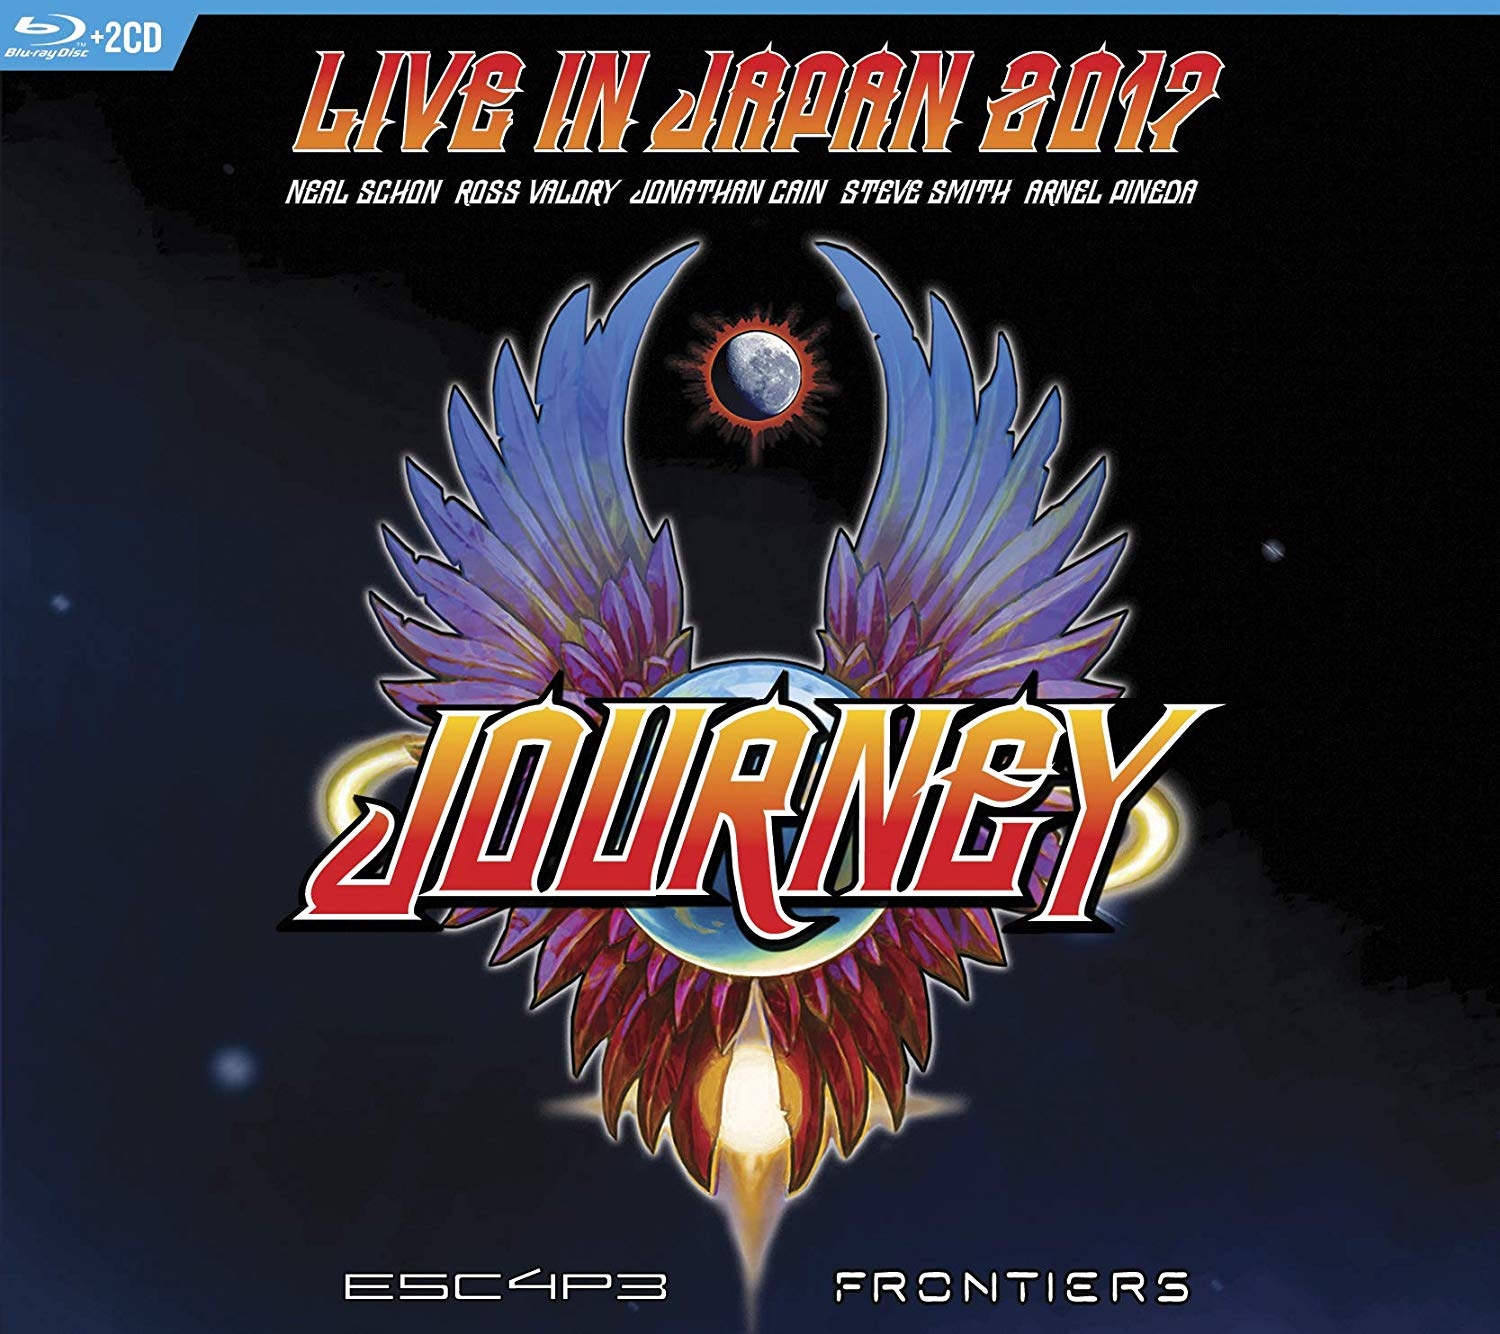 Live journey. Journey Escape 1981. Journey Frontiers. Journey "Escape (CD)". Escape Journey album Cover.